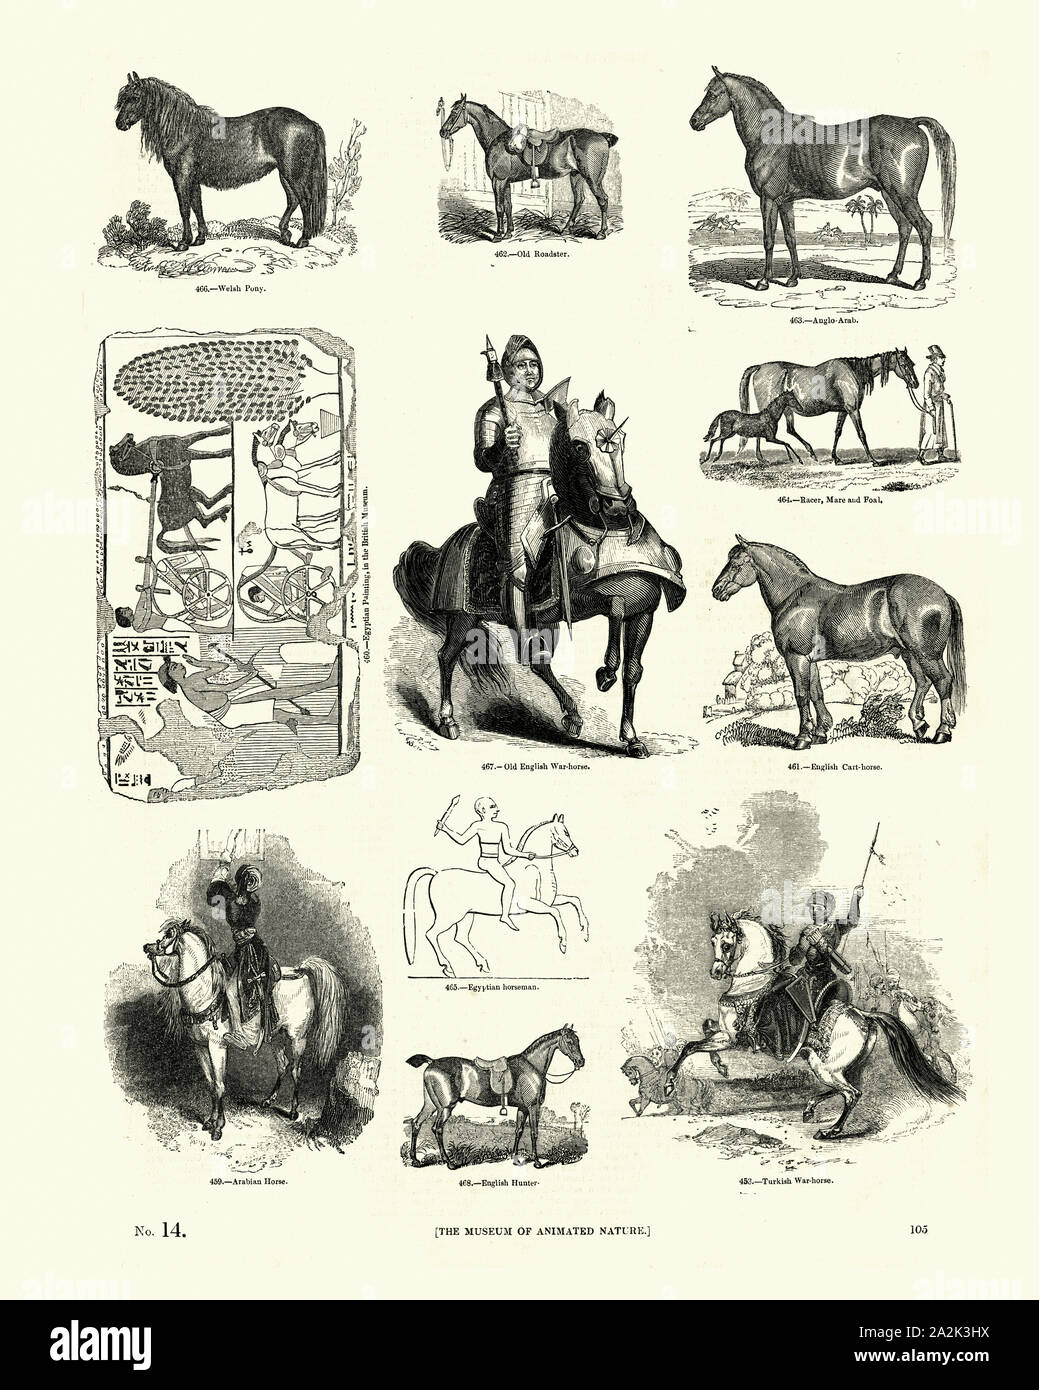 Vintage gravure de races équines poney Welsh, Roadster, racer, anglo-arabes, war horse, chevaux de trait, hunter arabian Banque D'Images